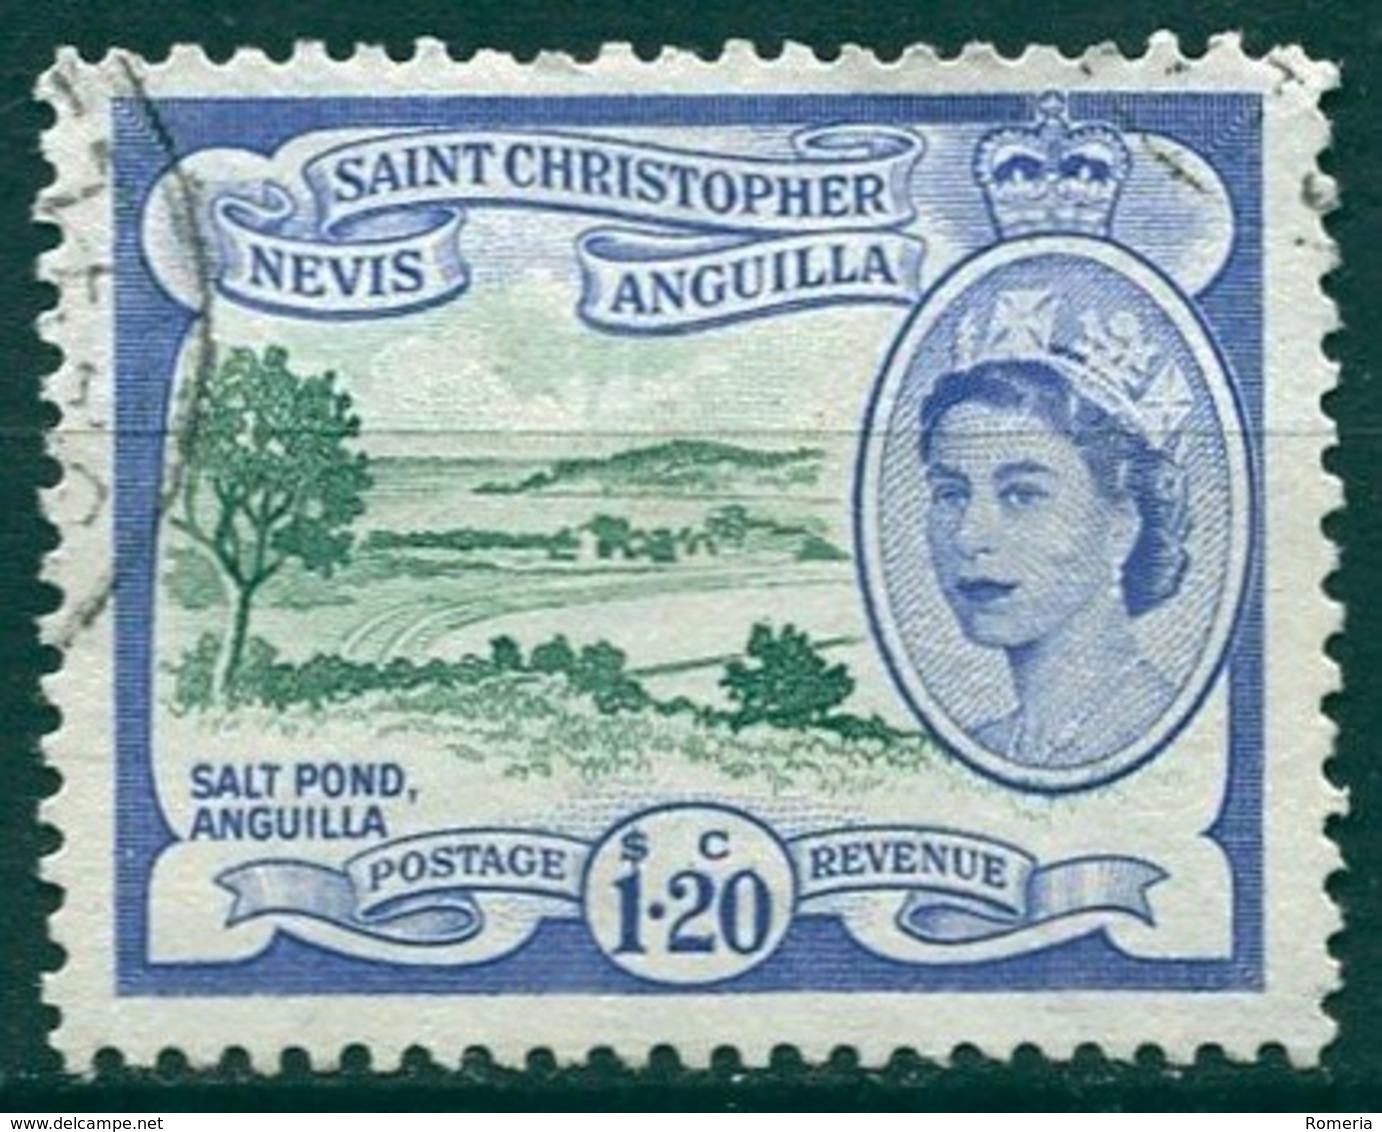 Saint Christopher Nevis Anguilla - 1954/1957 - Yt 146 - Série Courante - Oblitéré - St.Cristopher-Nevis & Anguilla (...-1980)